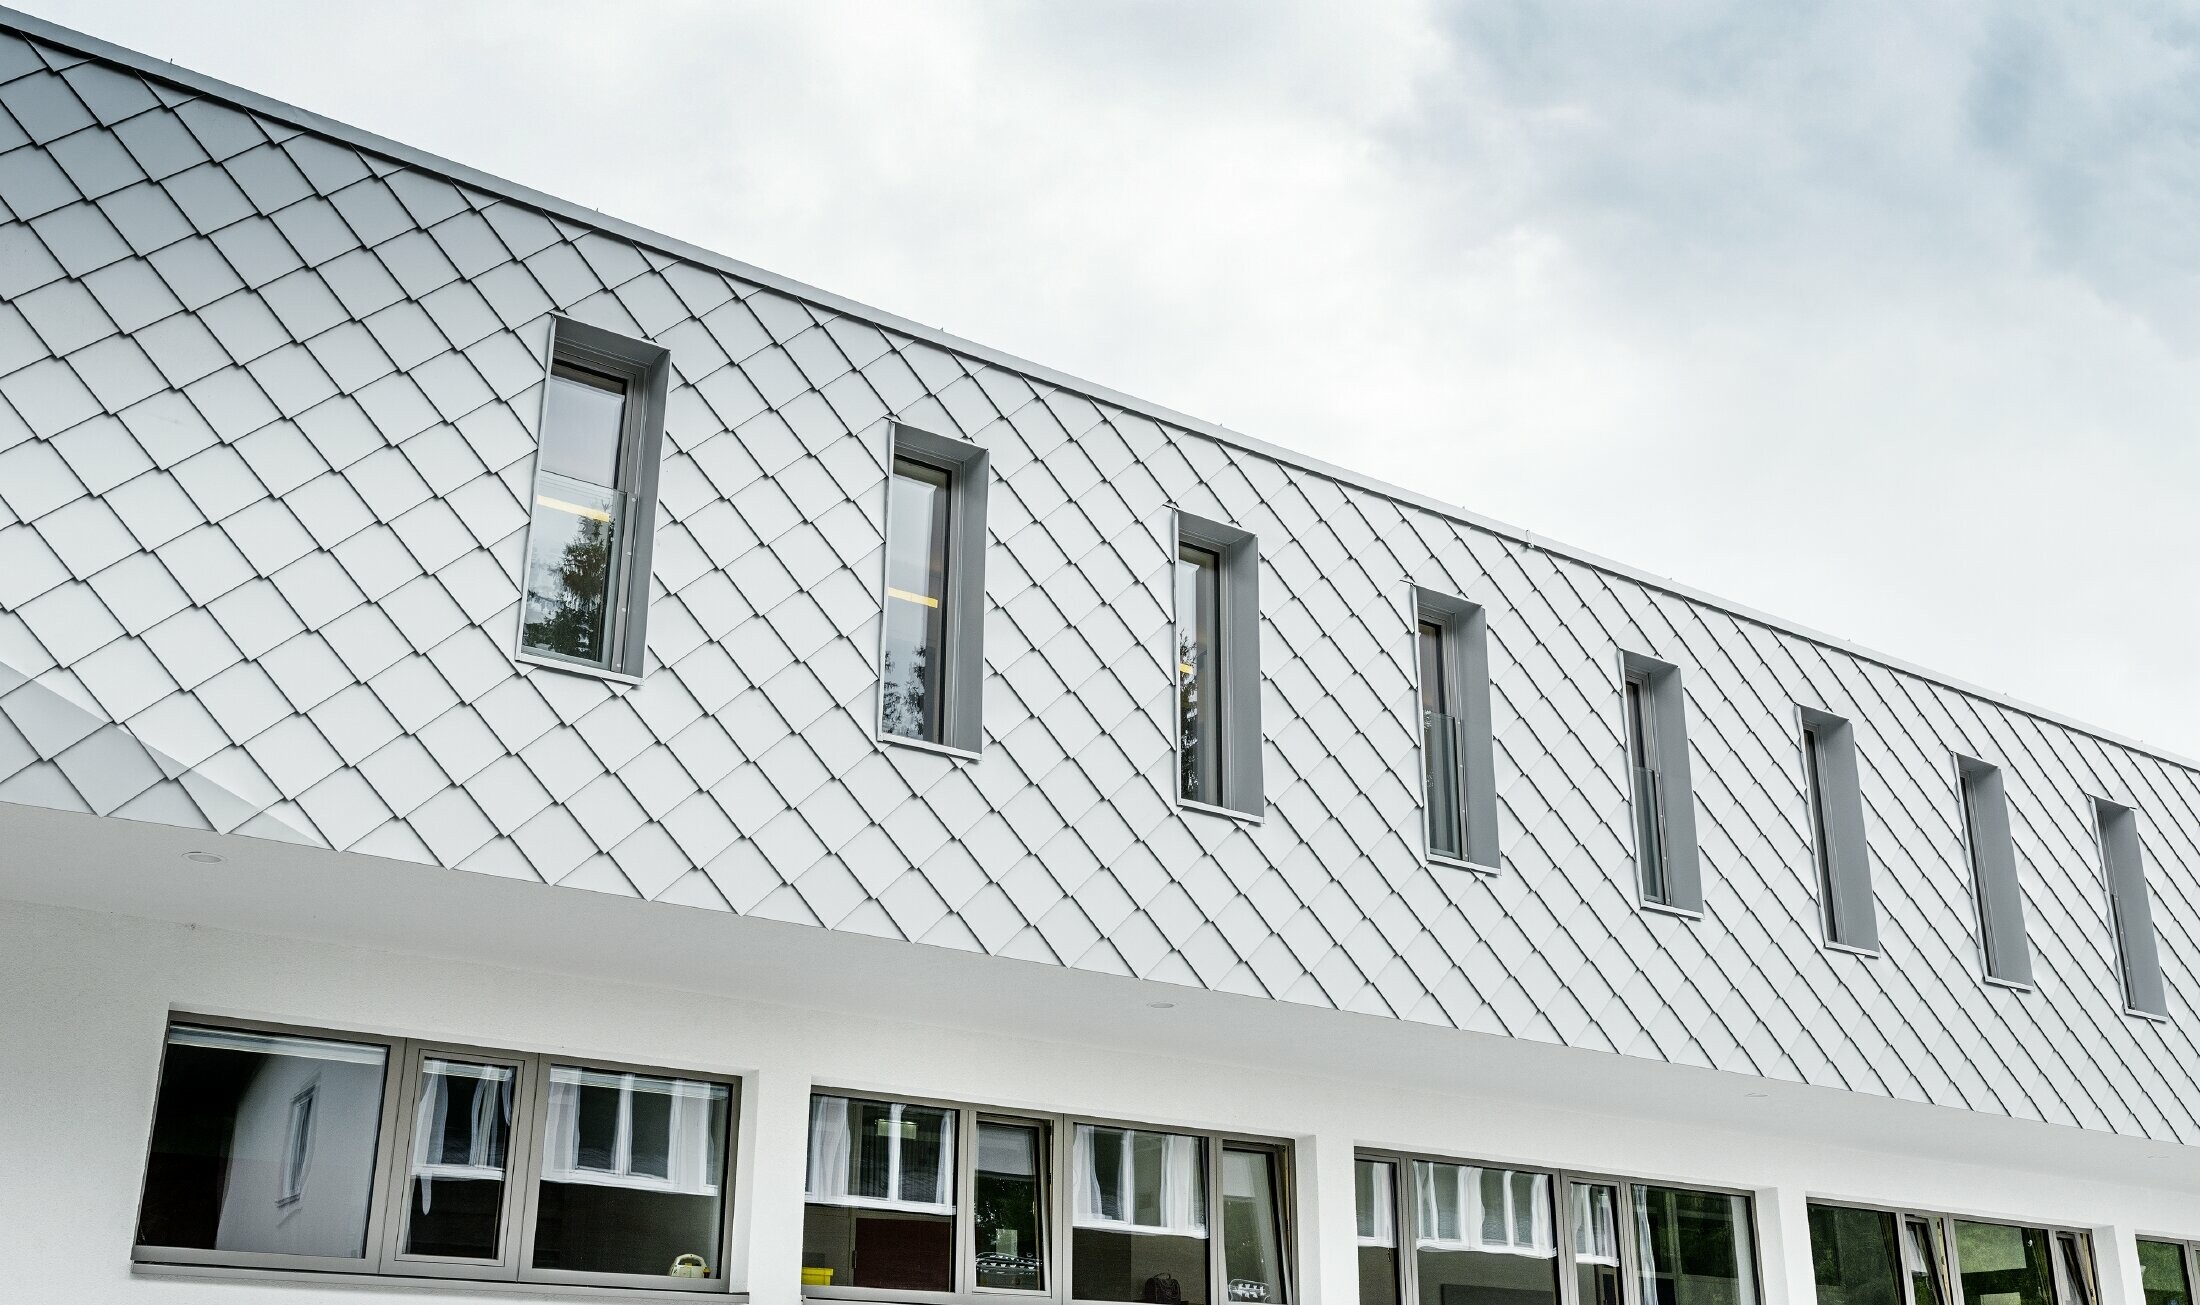 Nybygget børnehave i Kaprunn med en moderne aluminiumsfacade med PREFA-vægrombe i Prefa-hvid